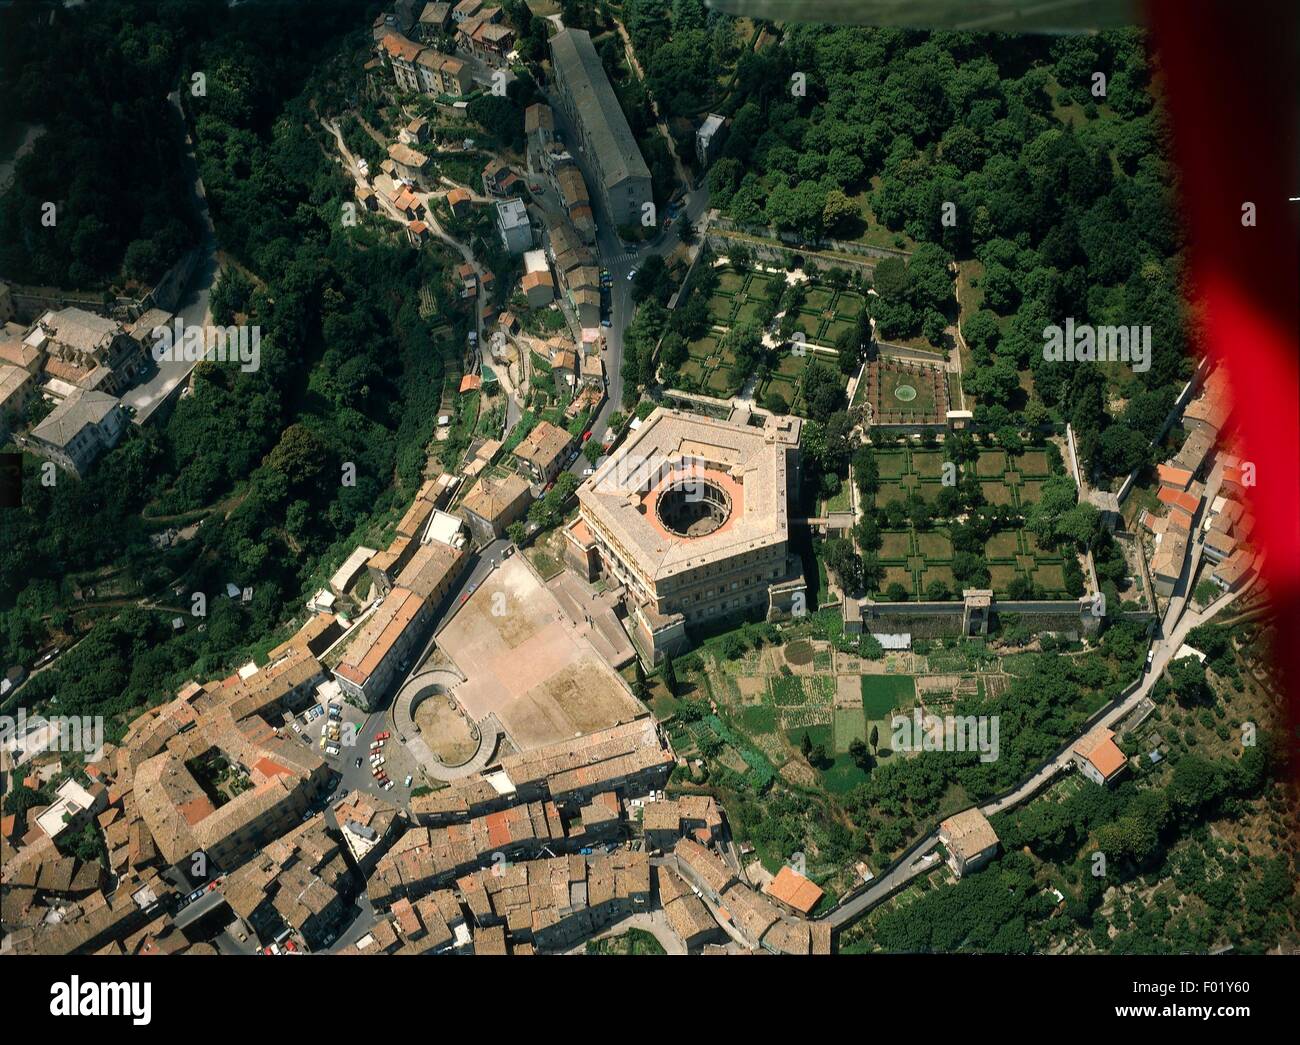 Vista aerea della villa Farnese di Caprarola, provincia di Viterbo - Lazio, Italia. Foto Stock